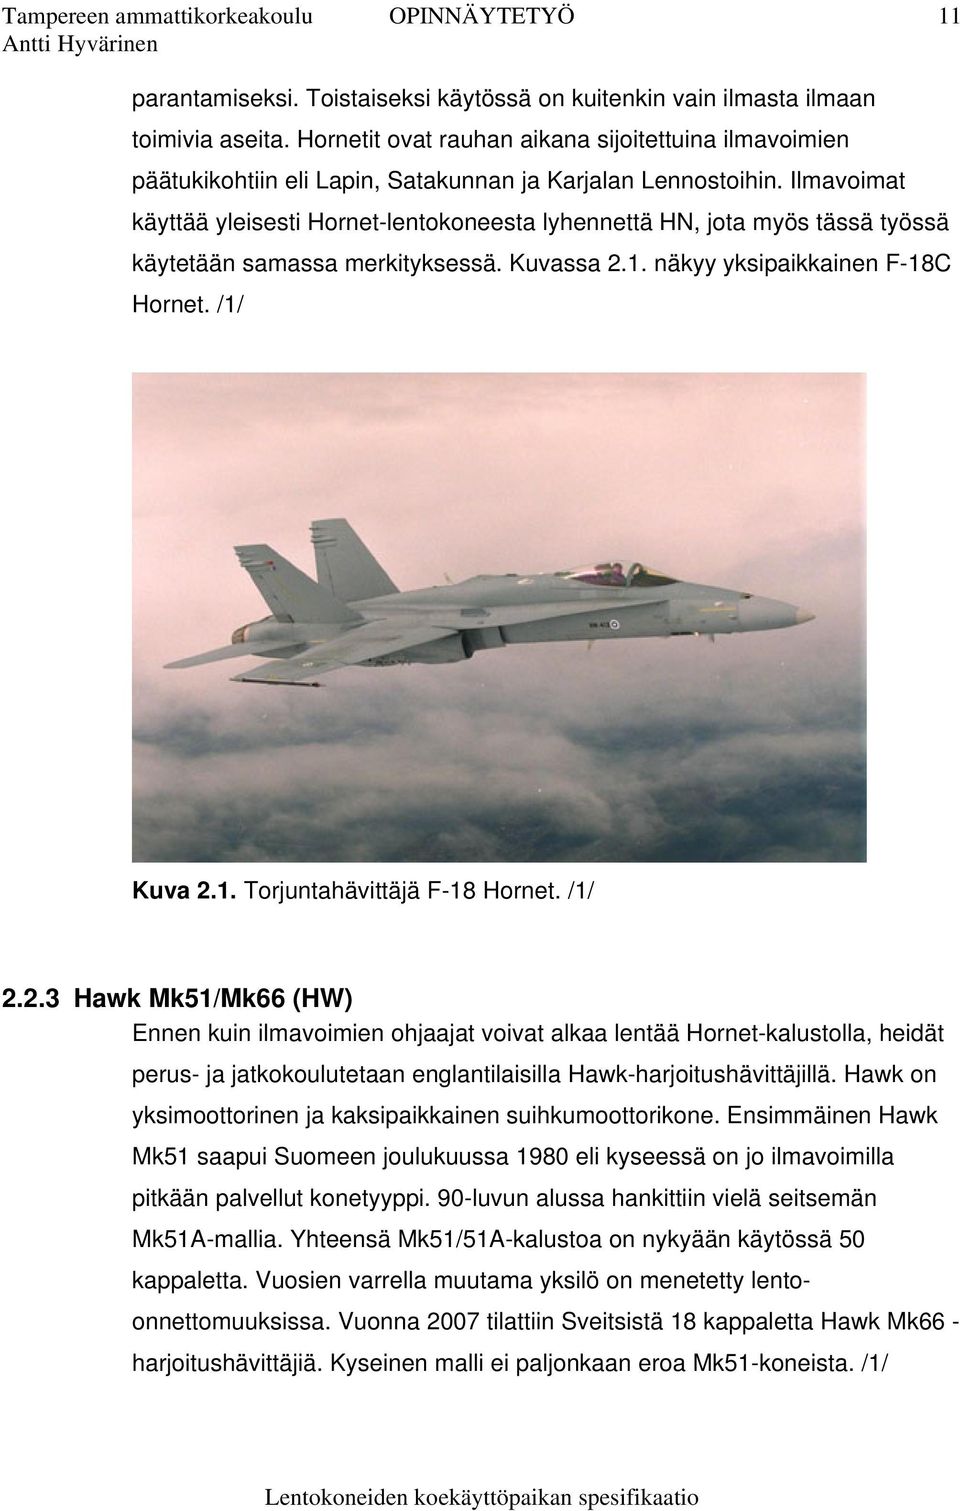 Ilmavoimat käyttää yleisesti Hornet-lentokoneesta lyhennettä HN, jota myös tässä työssä käytetään samassa merkityksessä. Kuvassa 2.1. näkyy yksipaikkainen F-18C Hornet. /1/ Kuva 2.1. Torjuntahävittäjä F-18 Hornet.